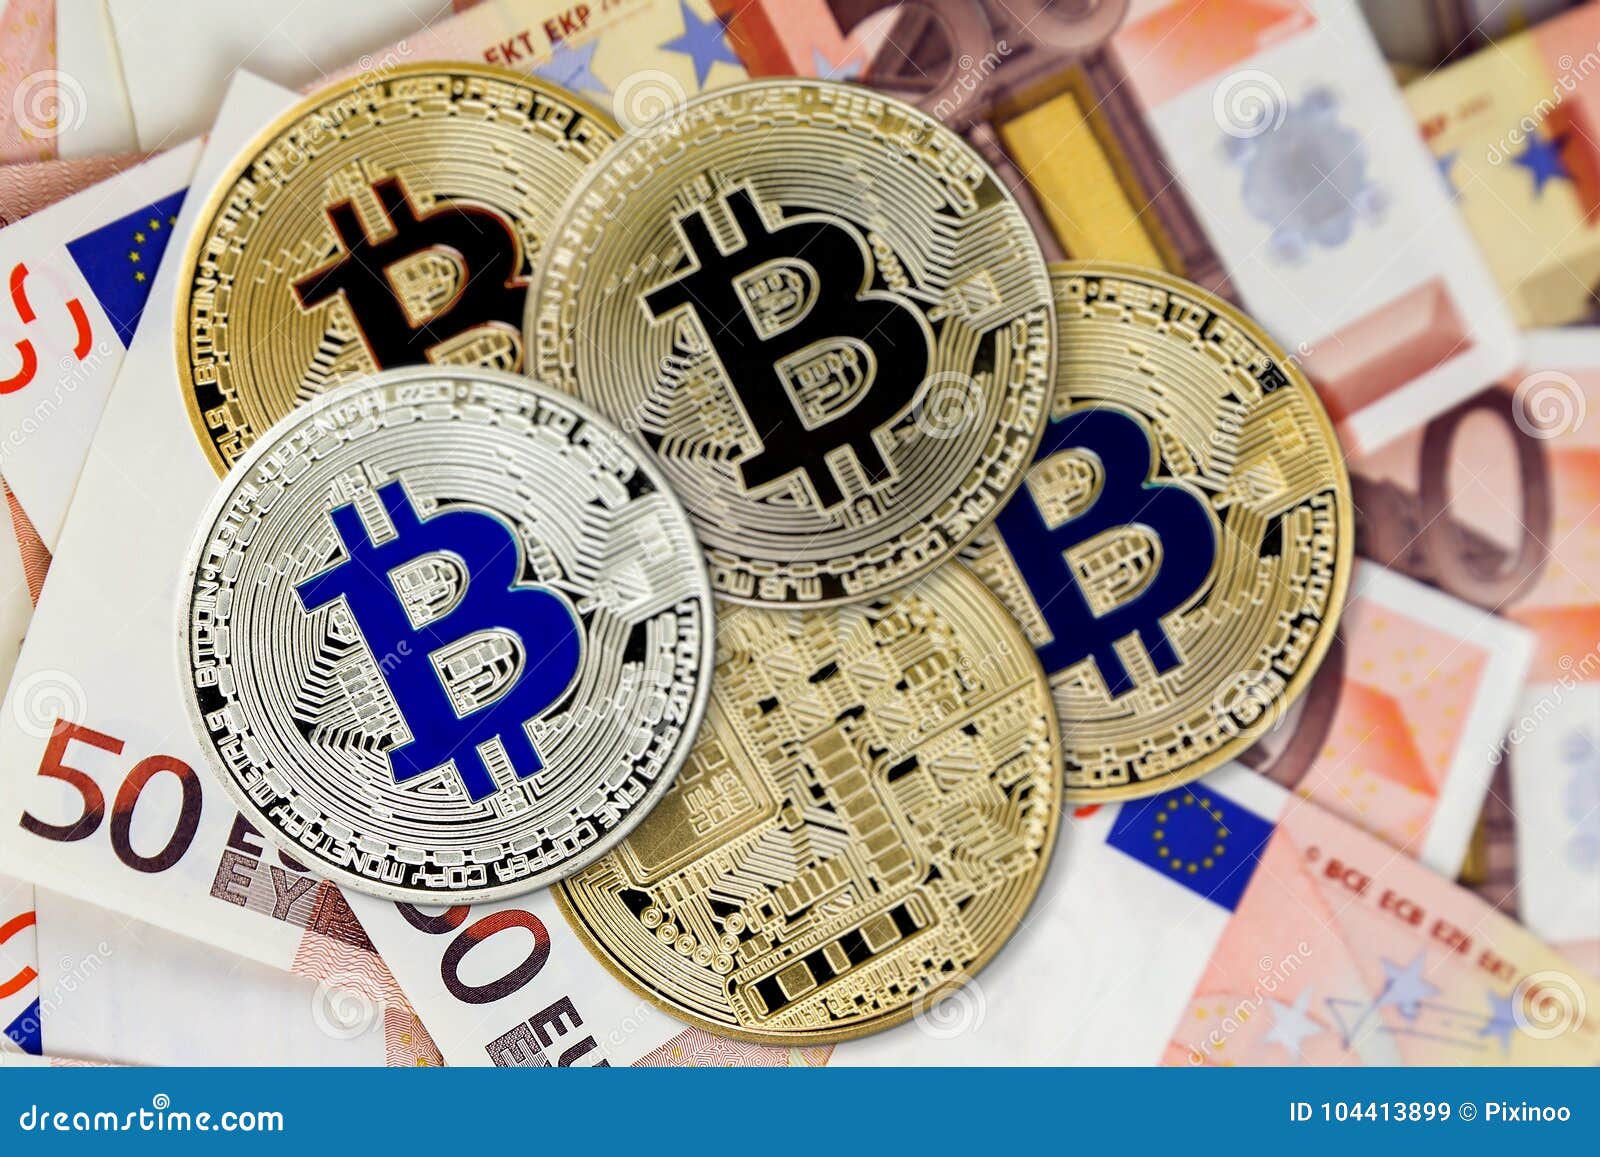 Bitcoin Virtual Coins On Euros Banknotes. Closeup, Macro ...